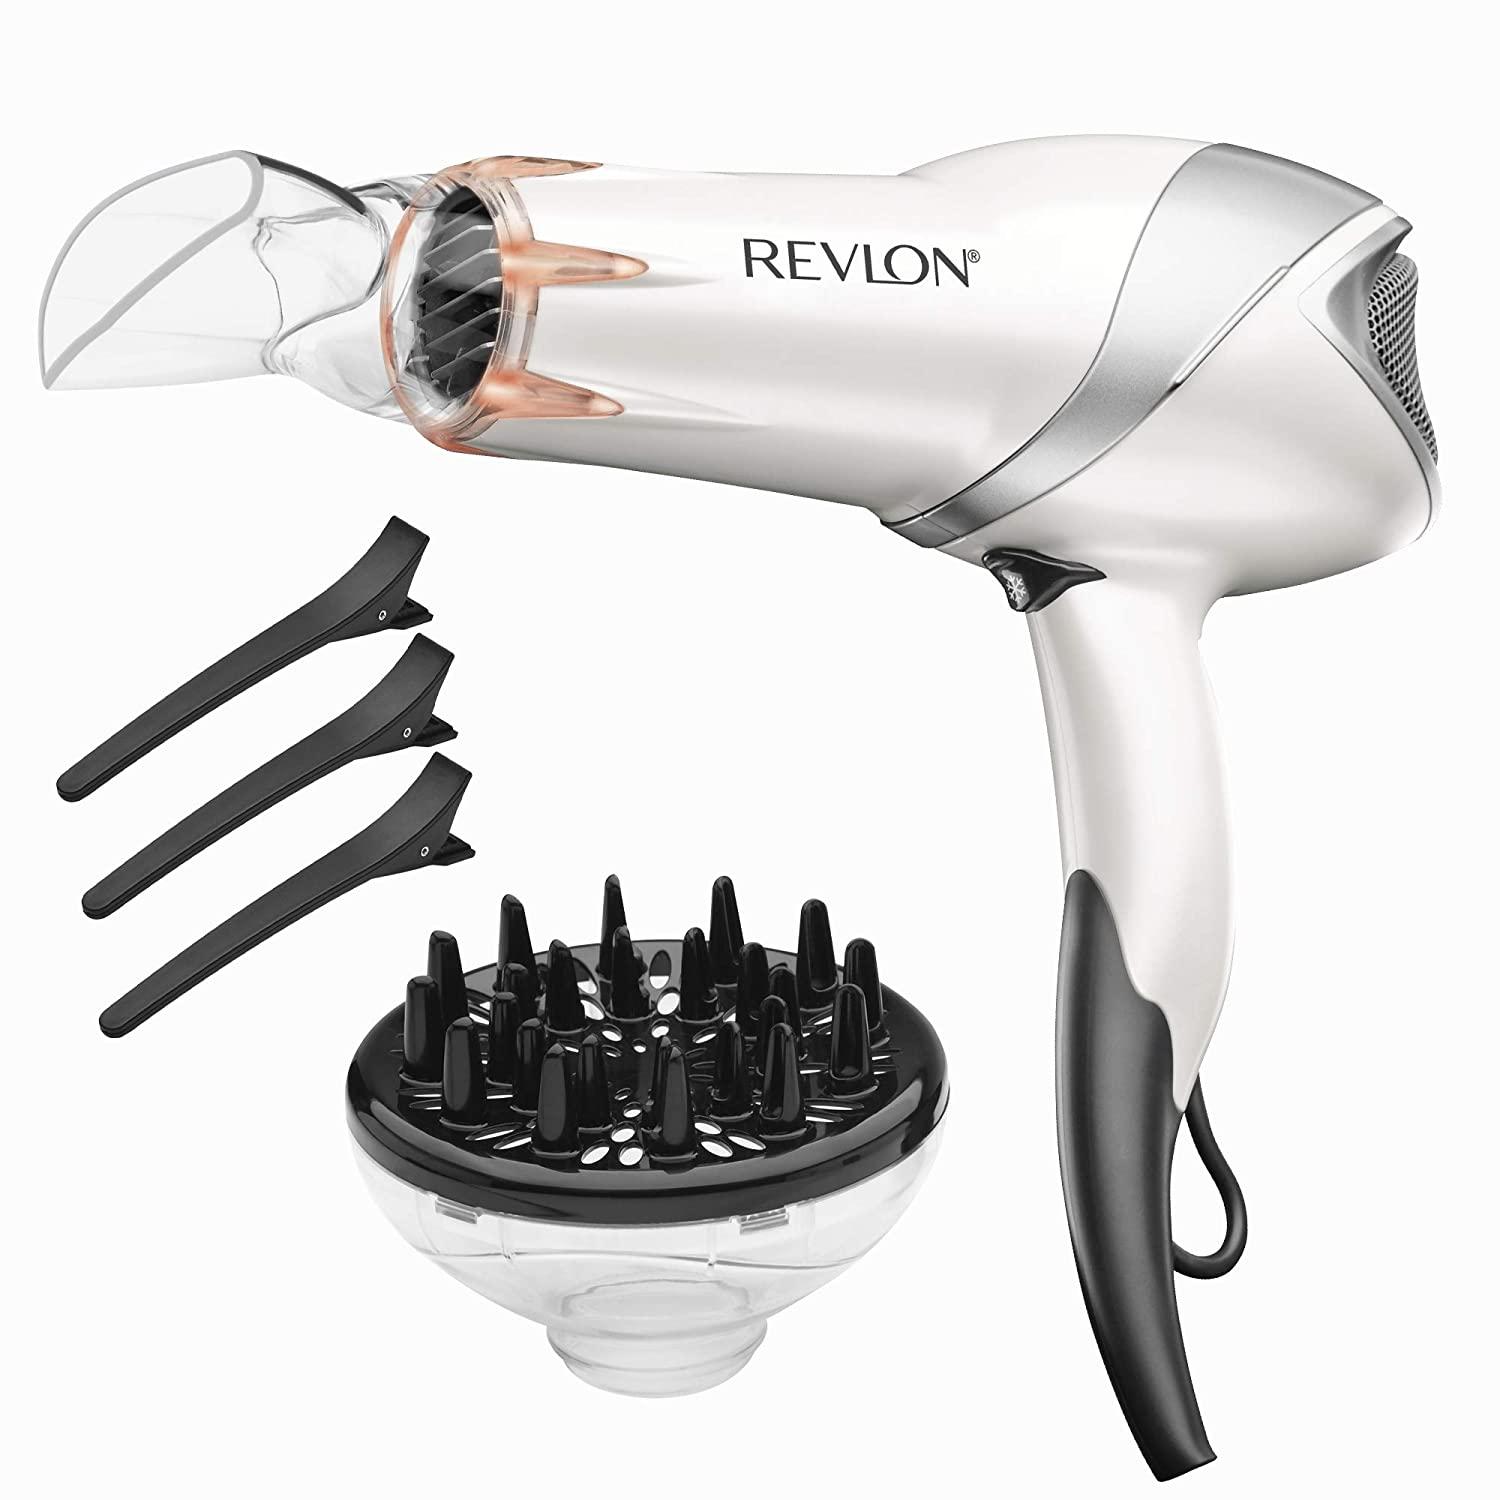 Revlon 1875W Infrared Heat Hair Dryer for $16.67